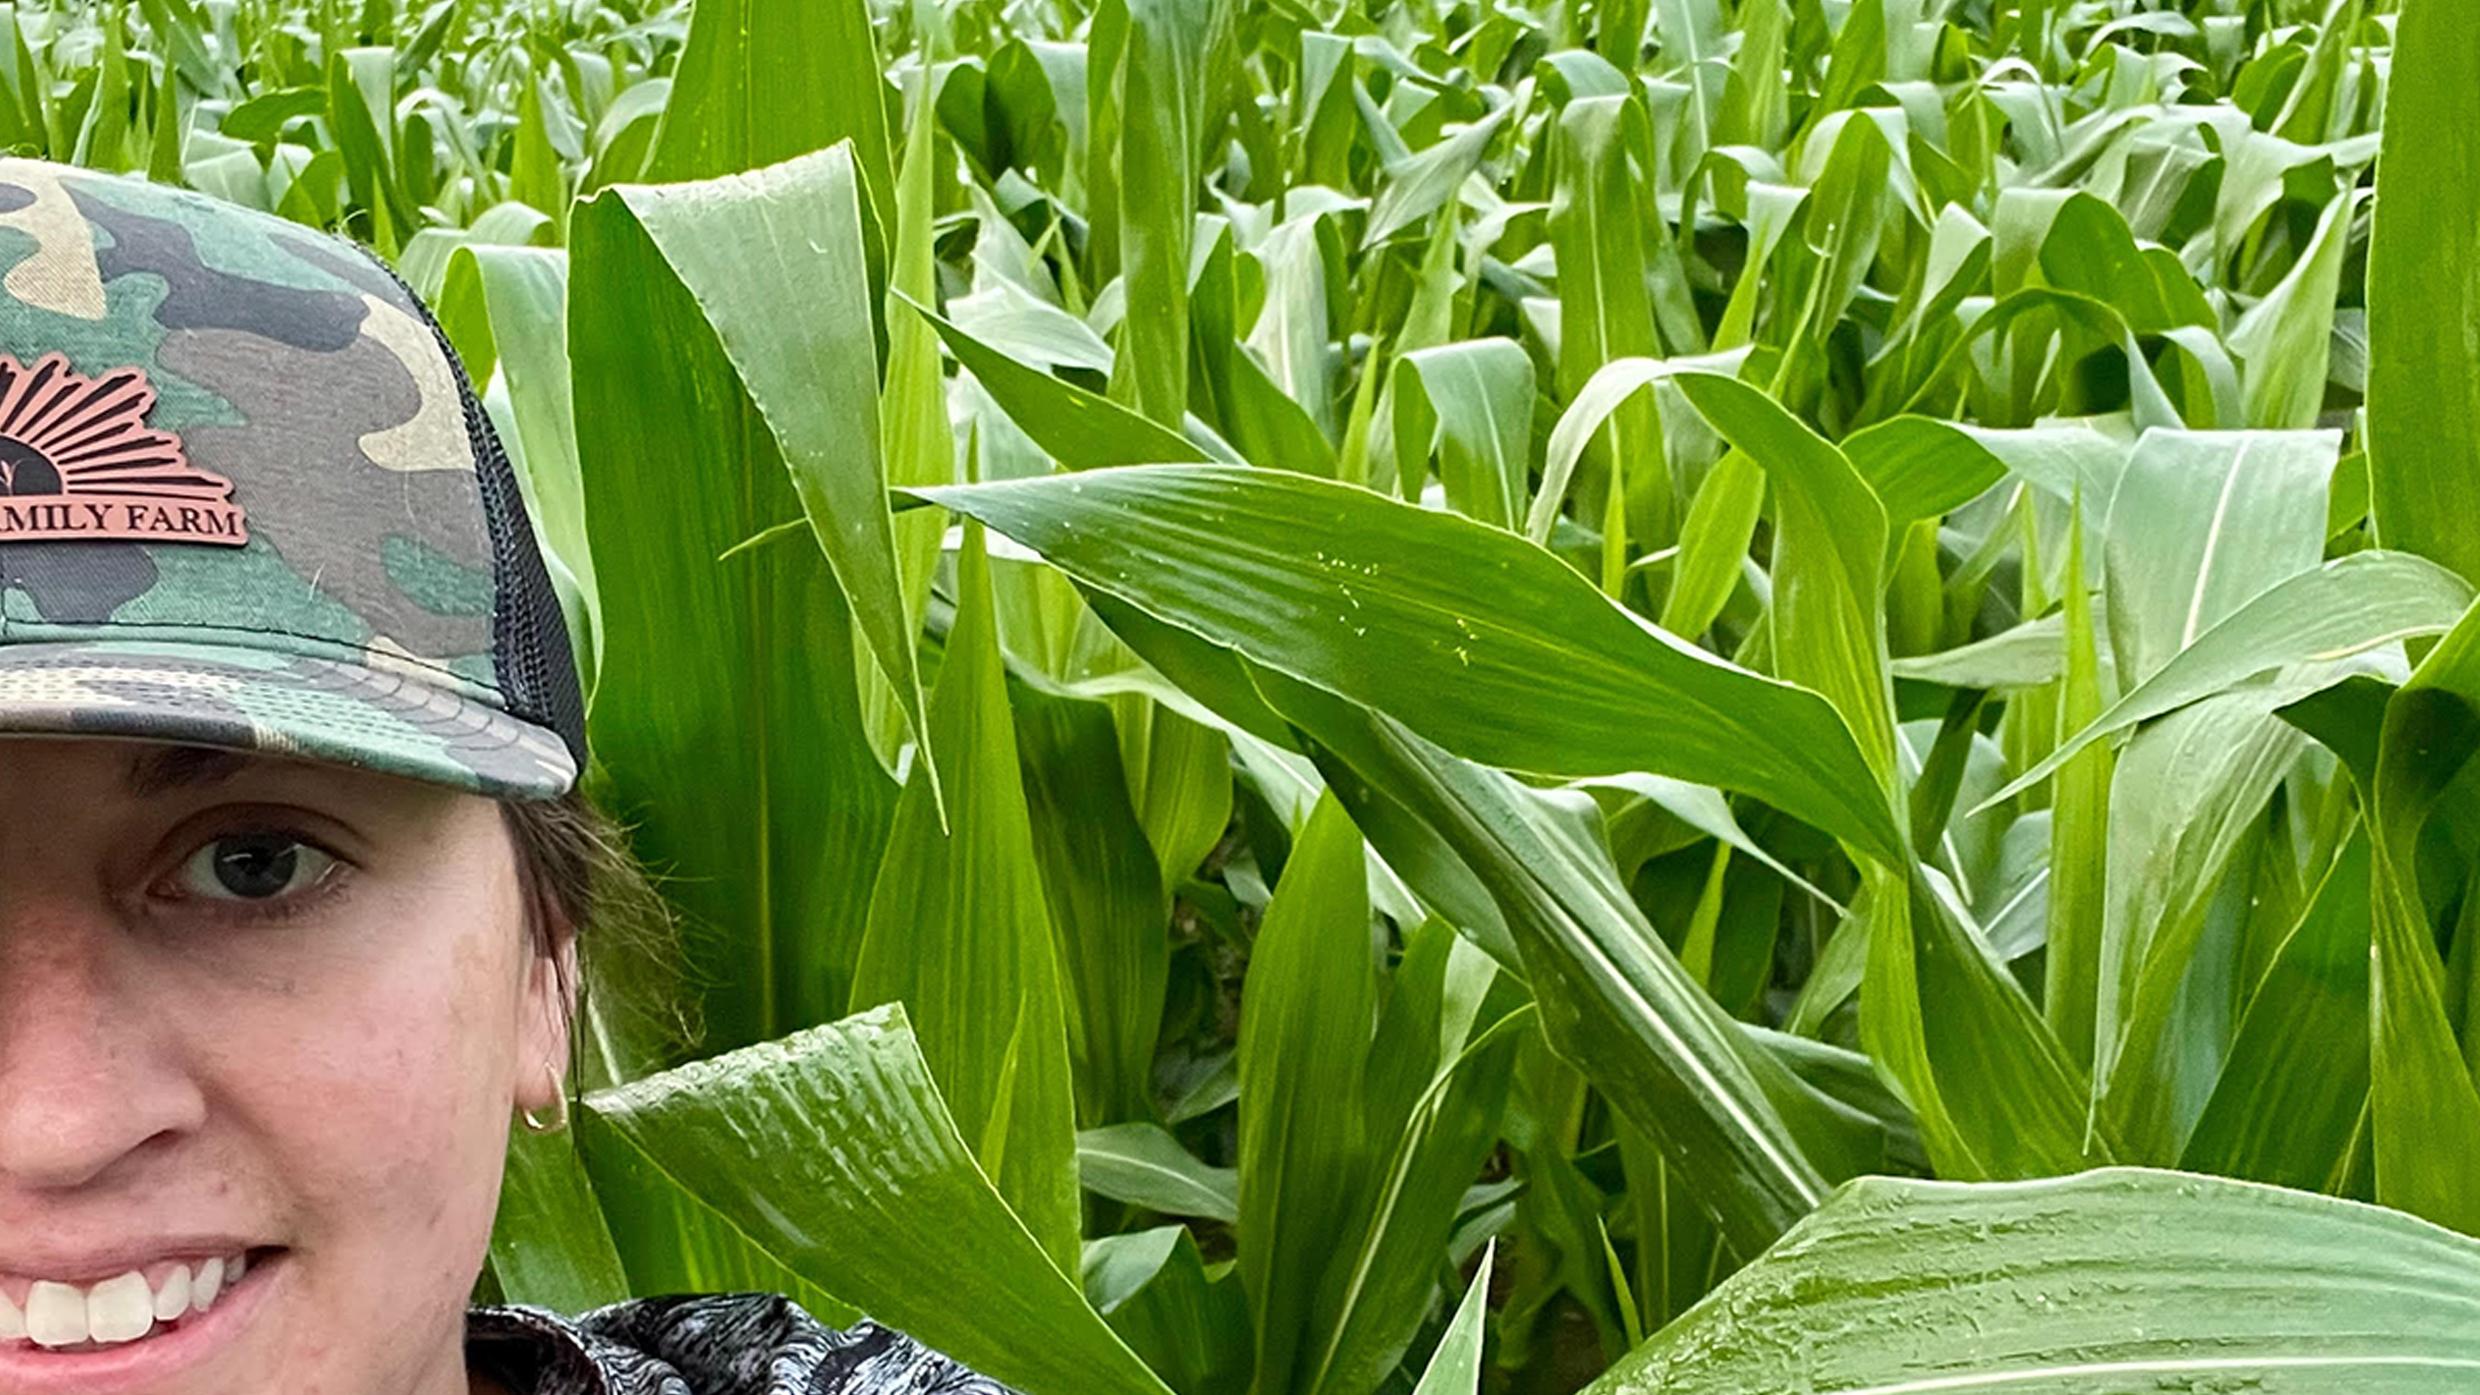 Danielle Goodrich in corn field